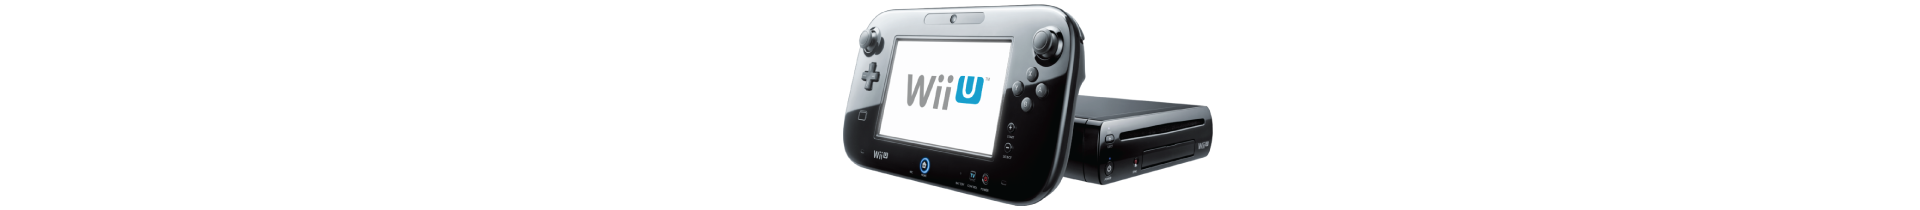 Acessórios Nintendo Wii U | PressStart.pt